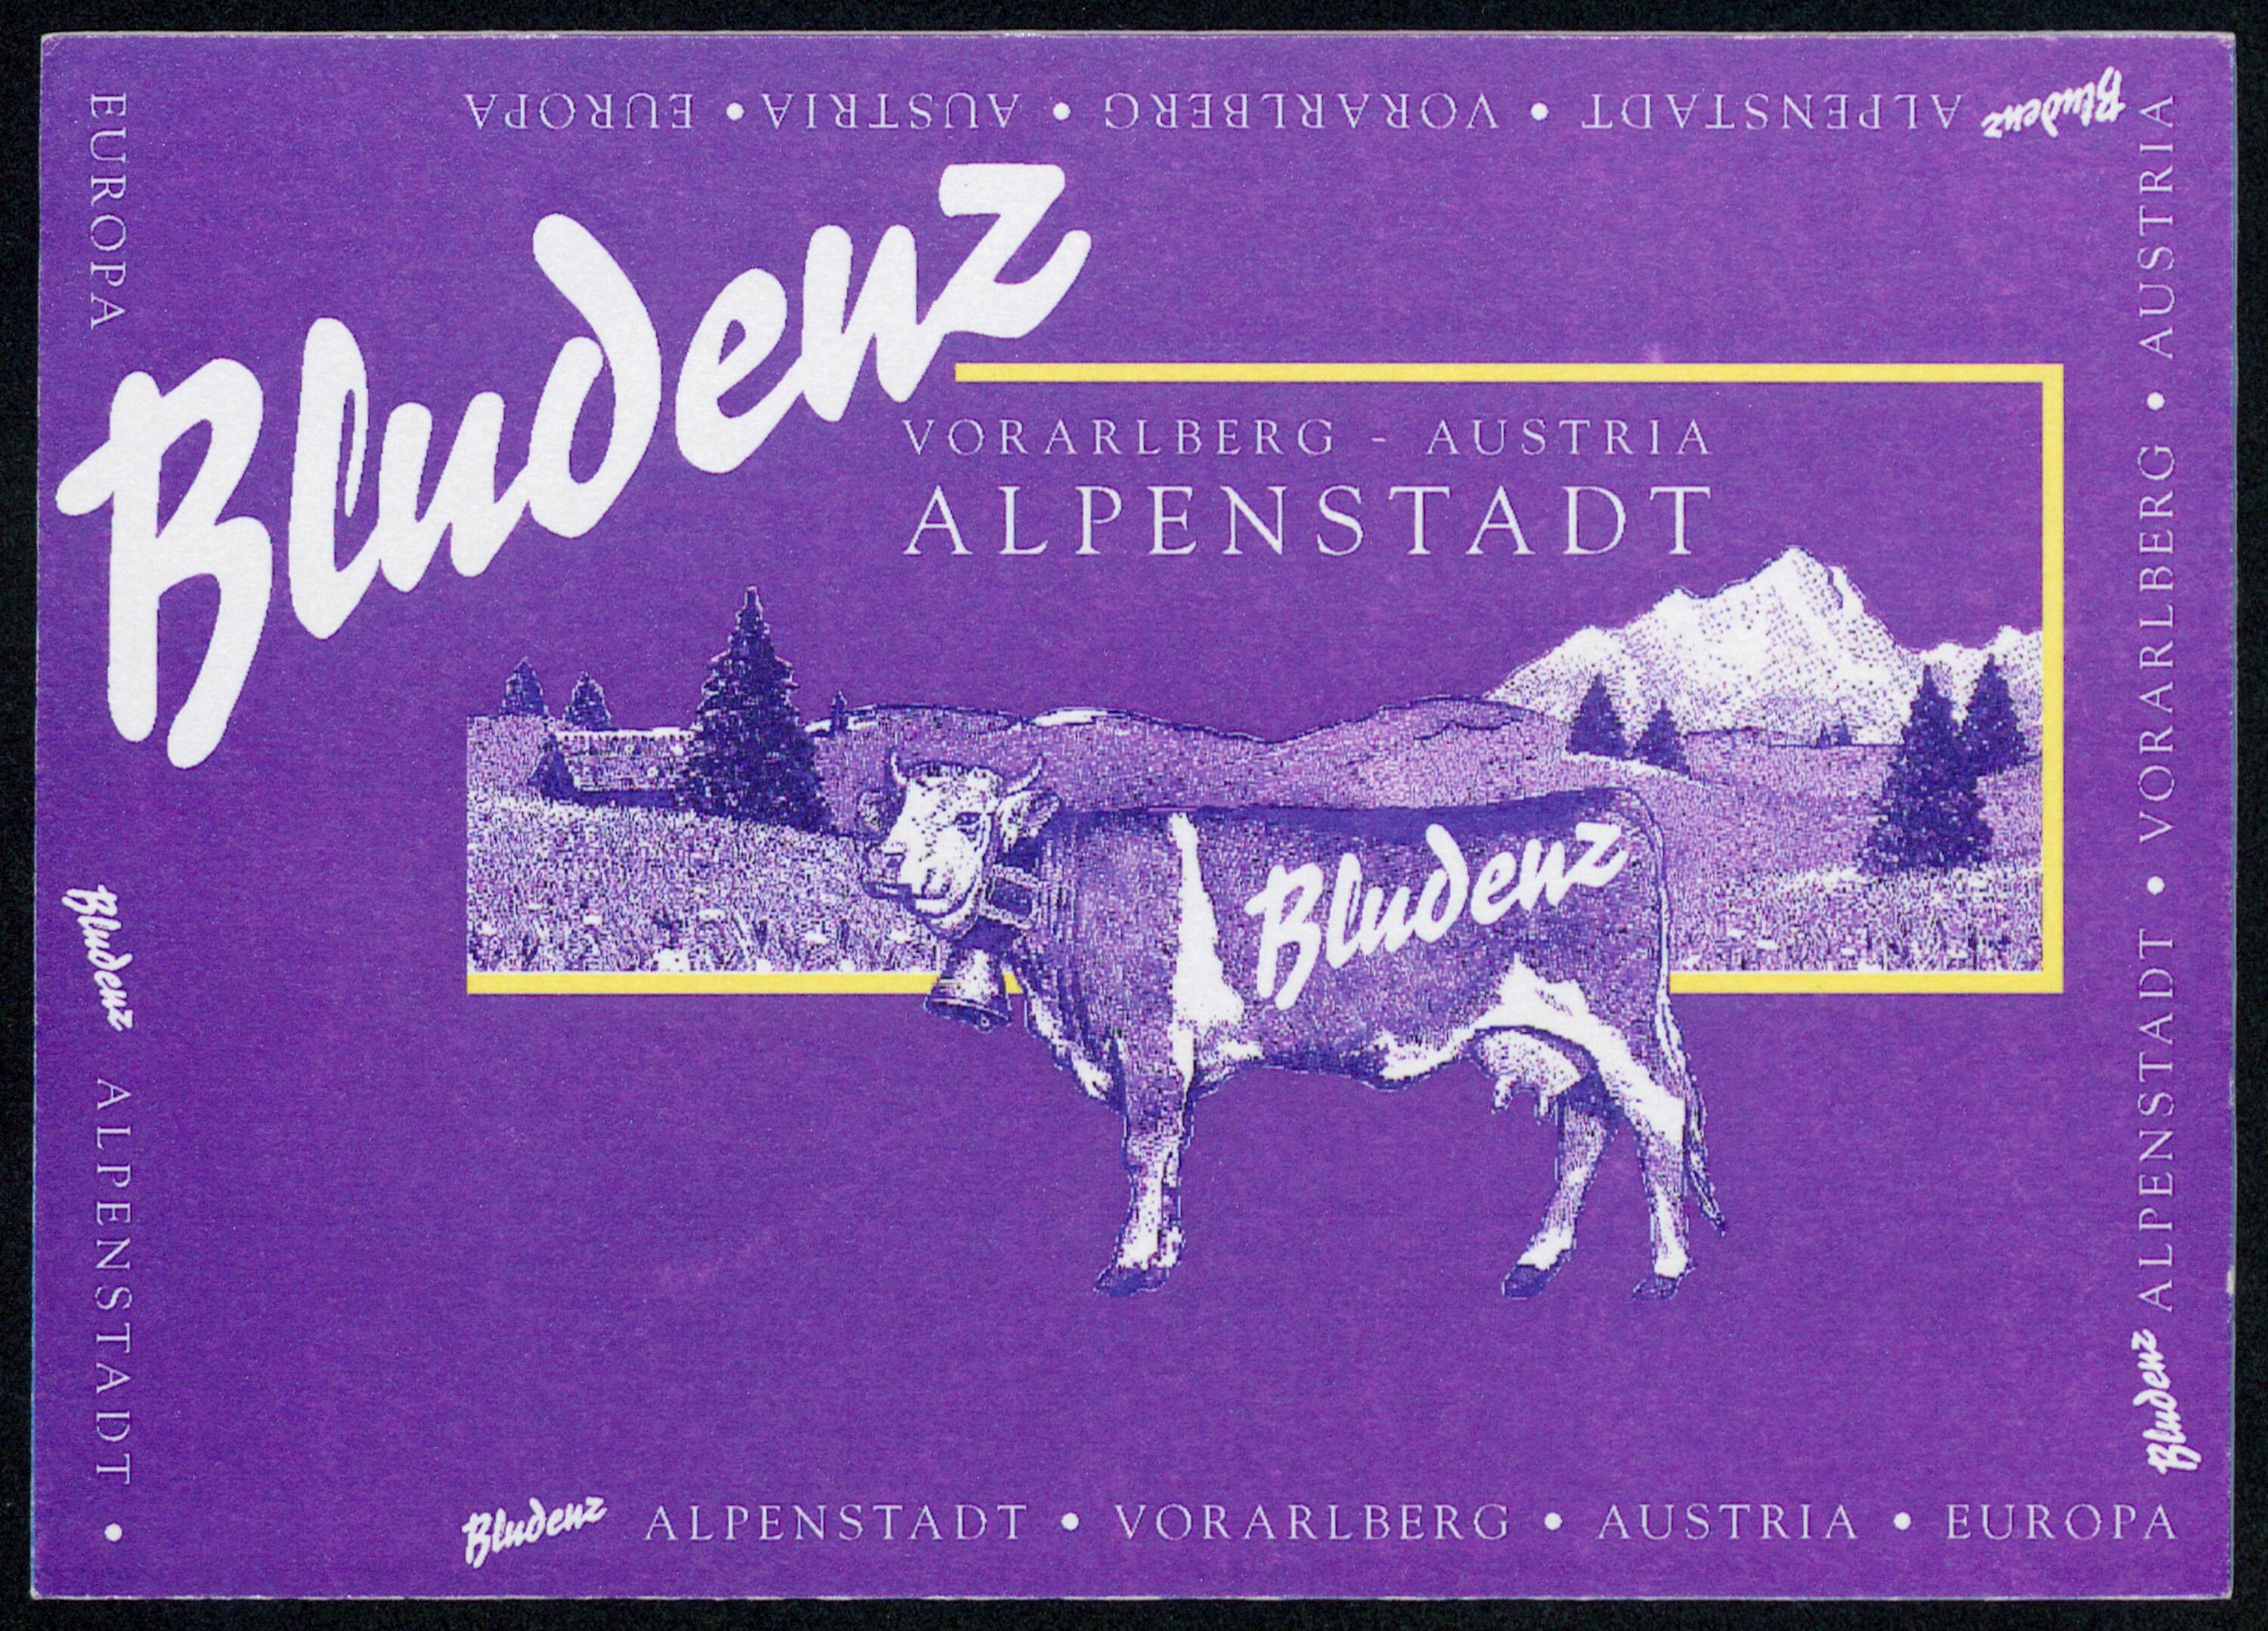 Bludenz Alpenstadt Vorarlberg - Austria></div>


    <hr>
    <div class=